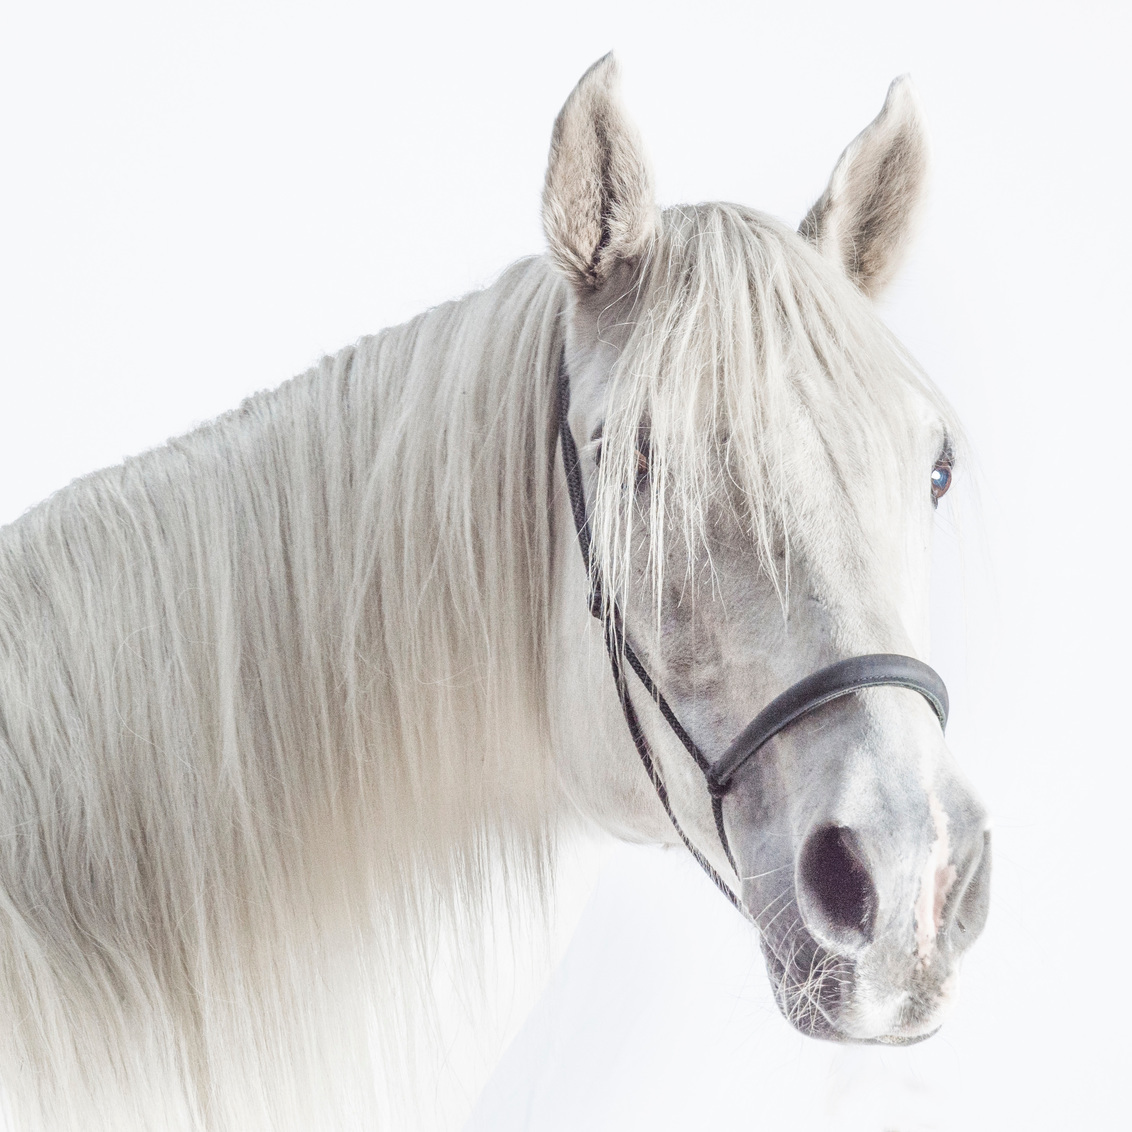 wit paard - foto - Zoom.nl